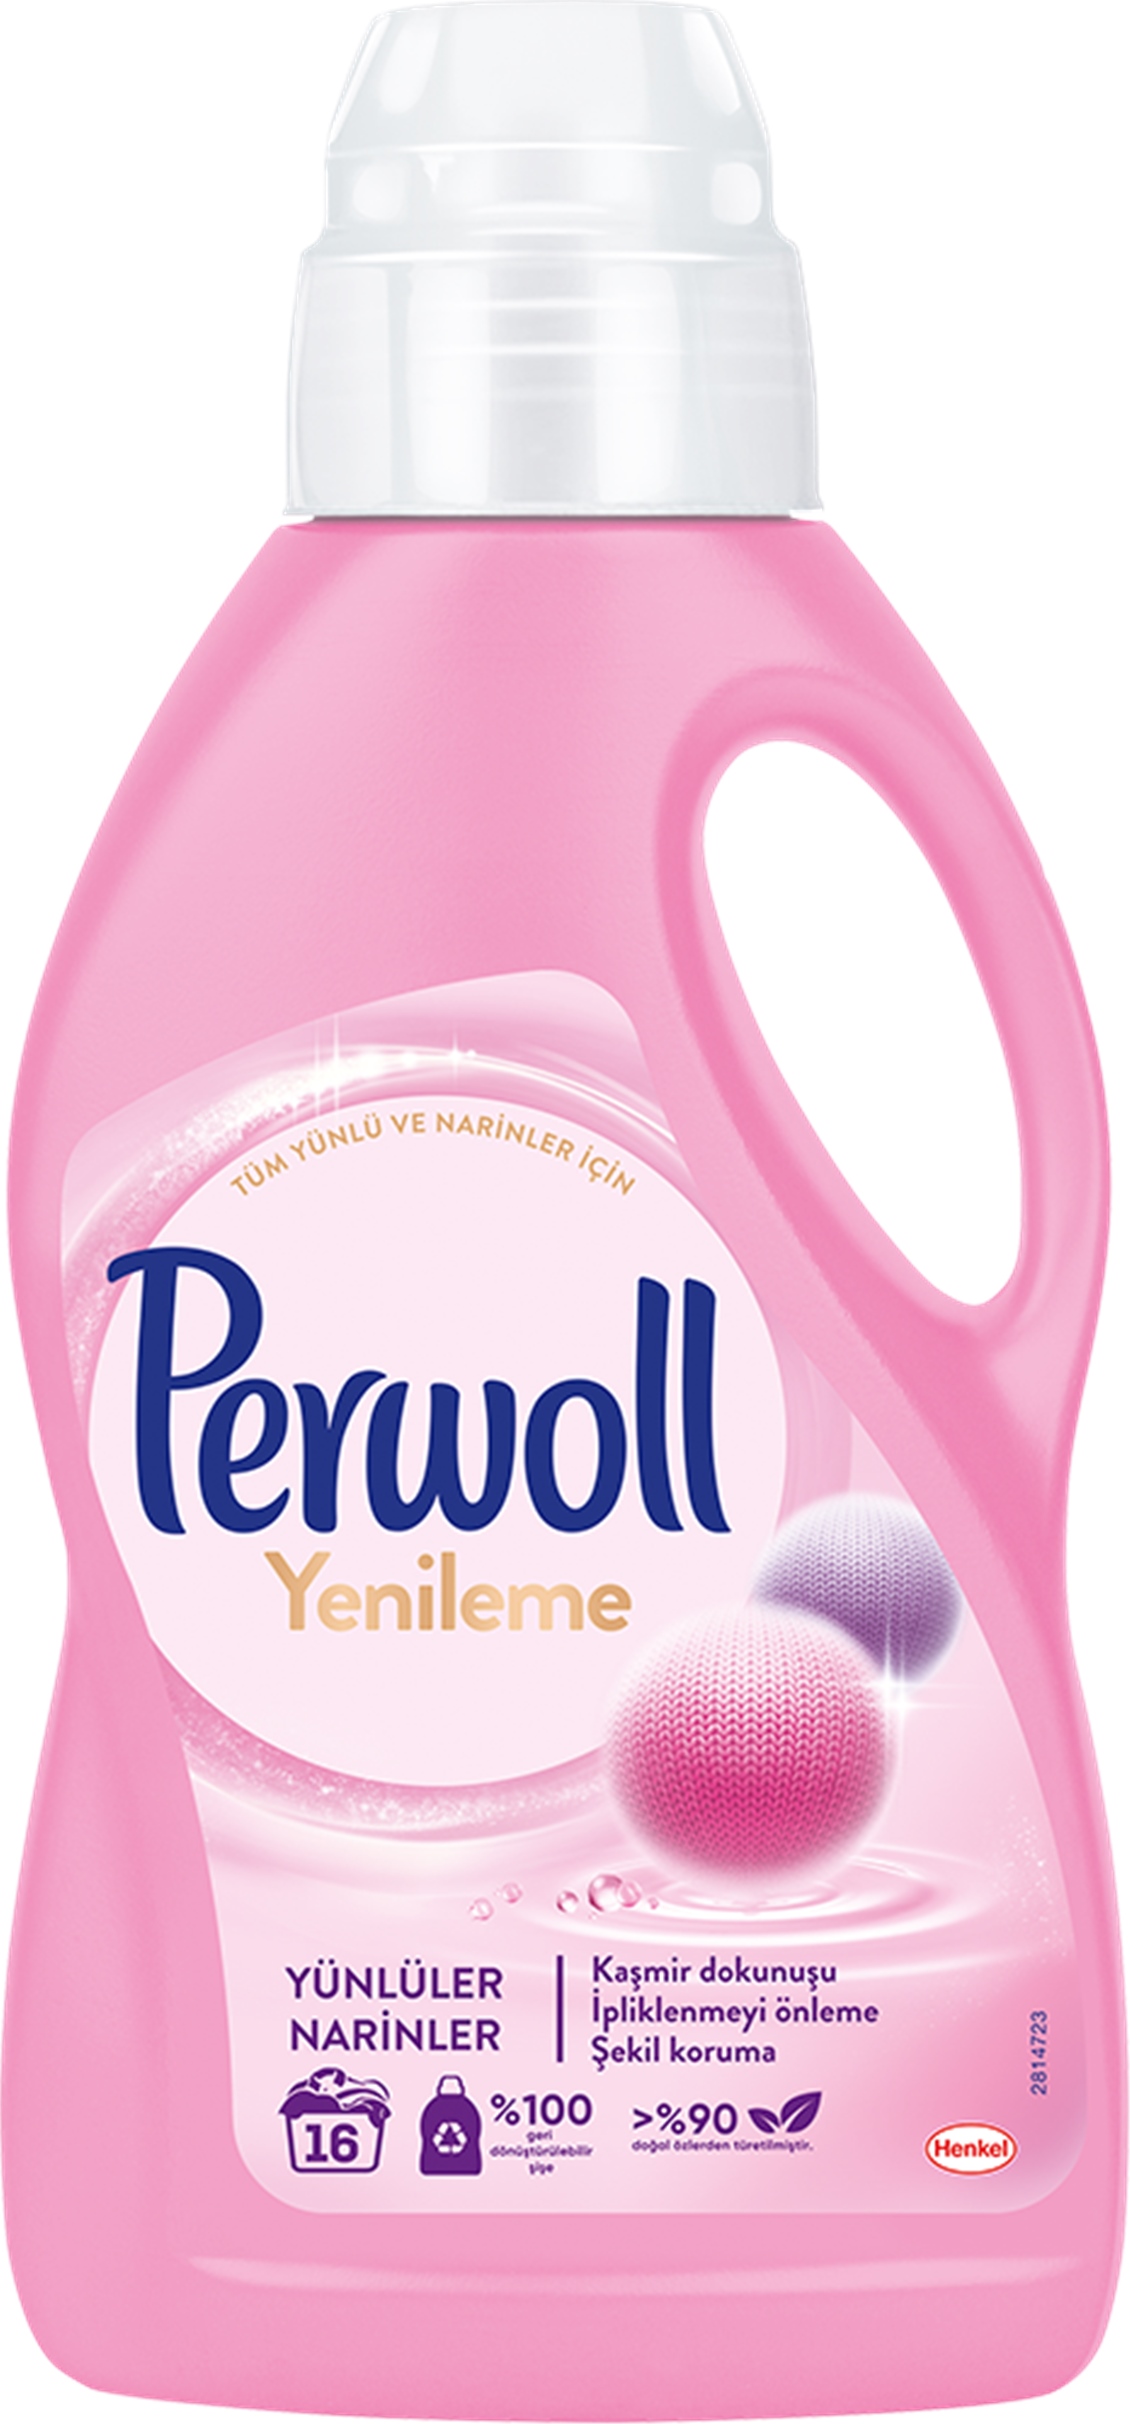 Perwoll Sıvı Yünlü-Narin 1000 ml - Onur Market